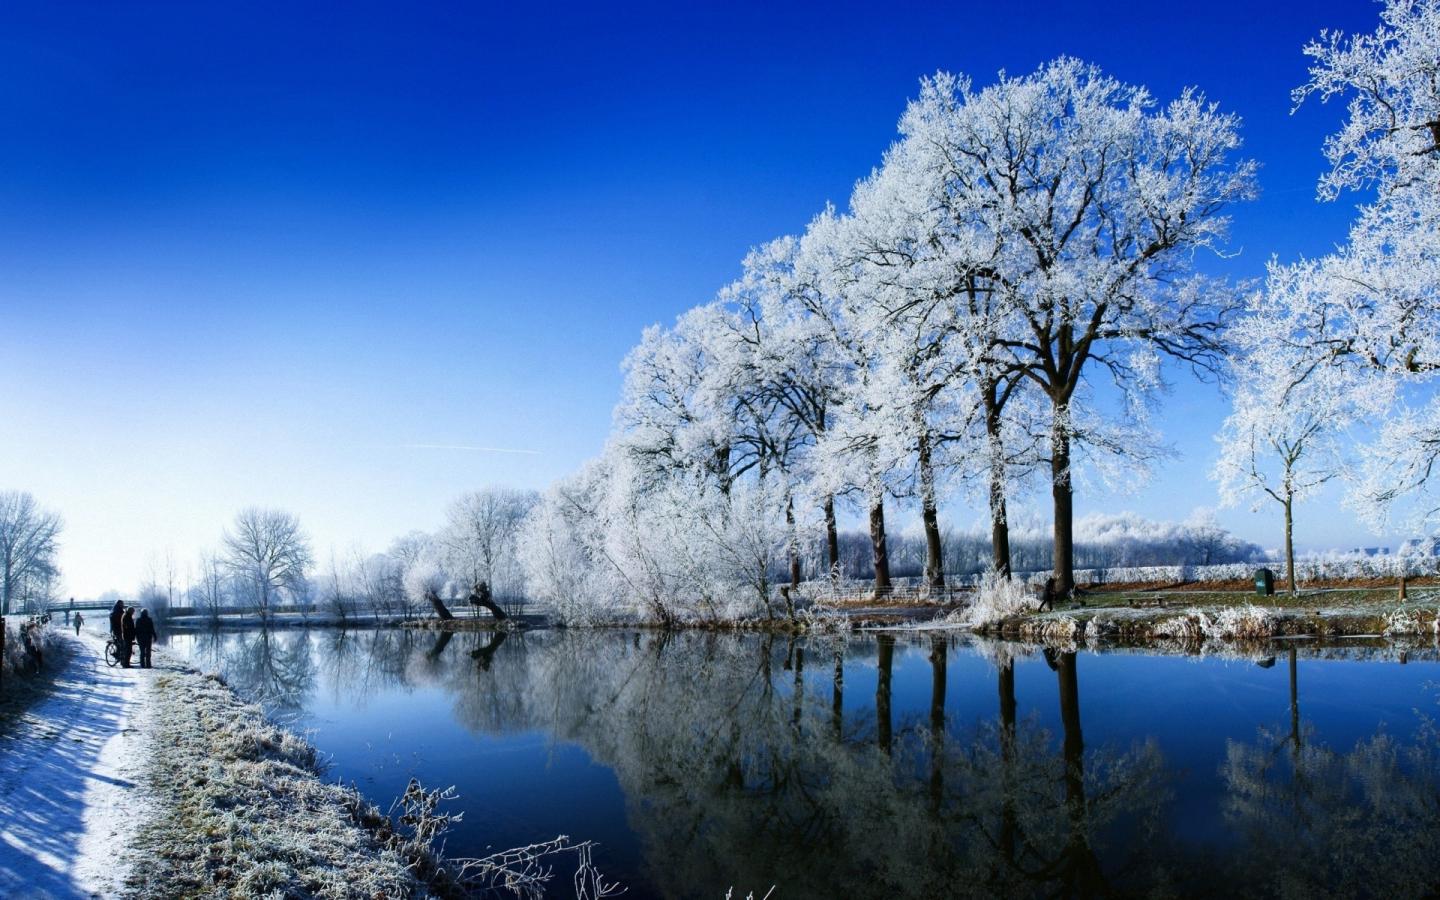 Winter For Windows 8 desktop wallpaper 1440x900 - Landscapes / Other